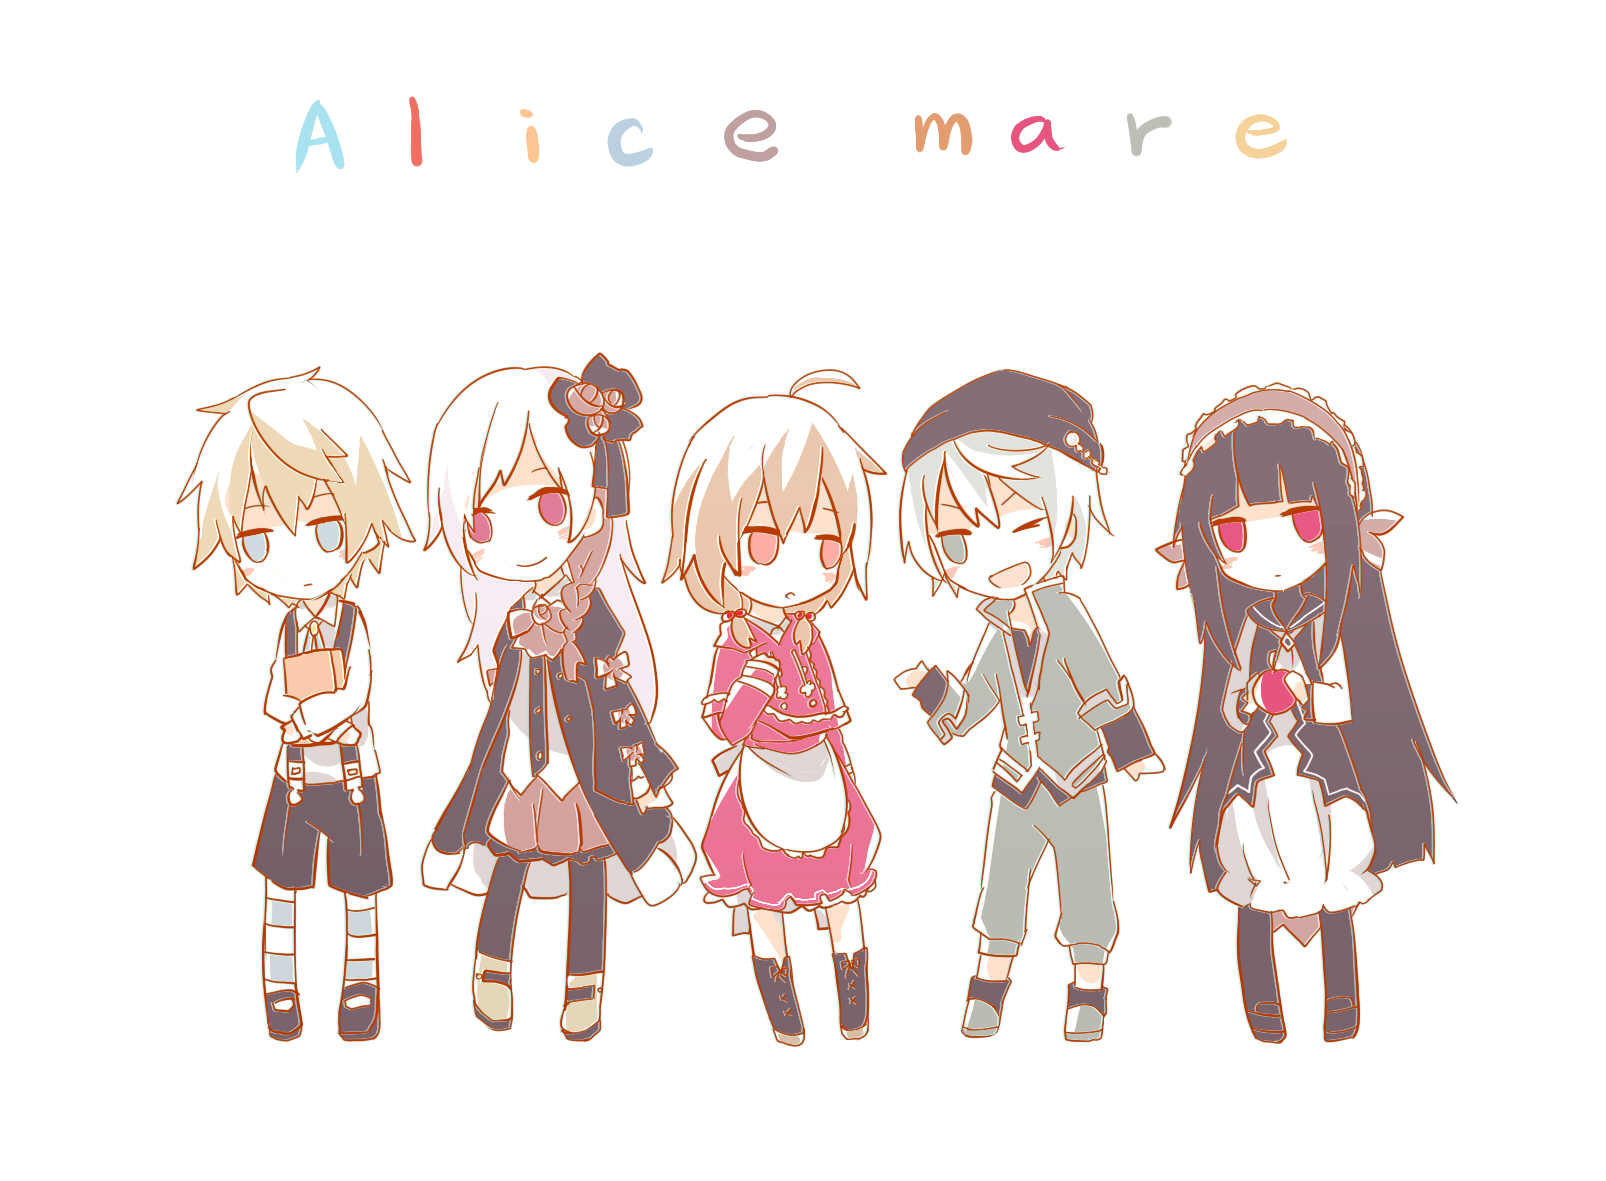 10. Alicemare